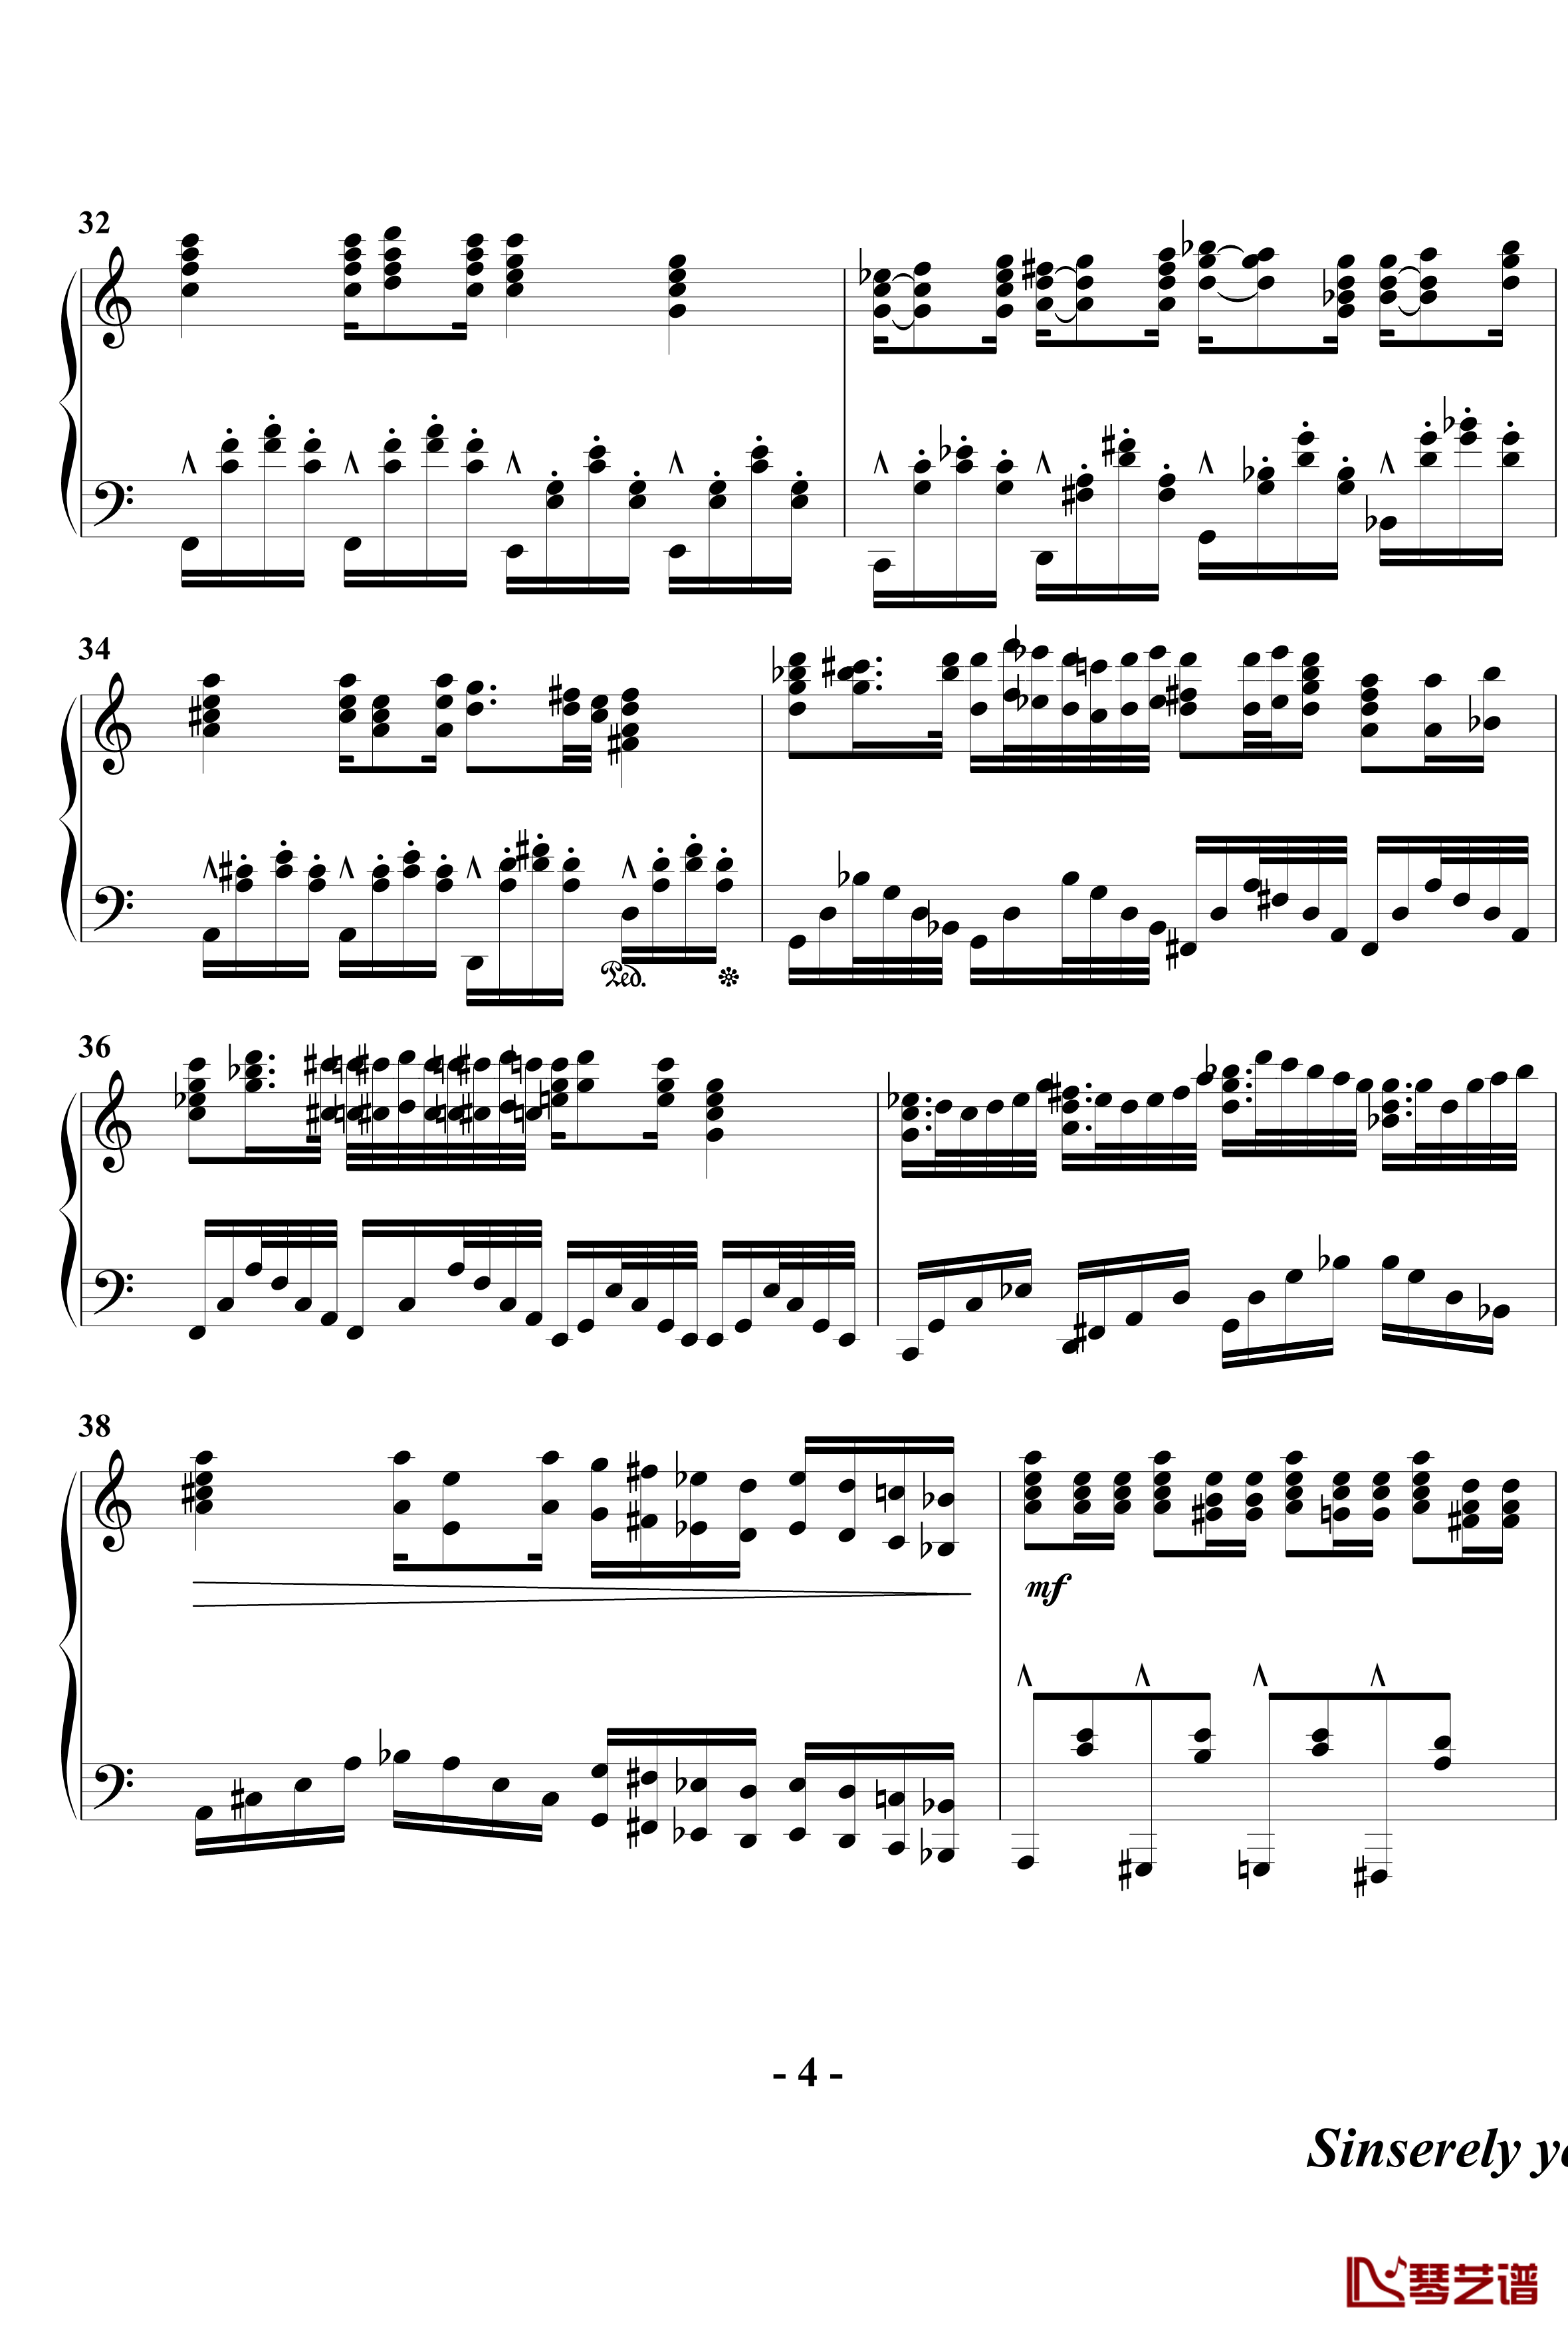 幻想奏鸣曲钢琴谱-第一乐章-beornotbe4